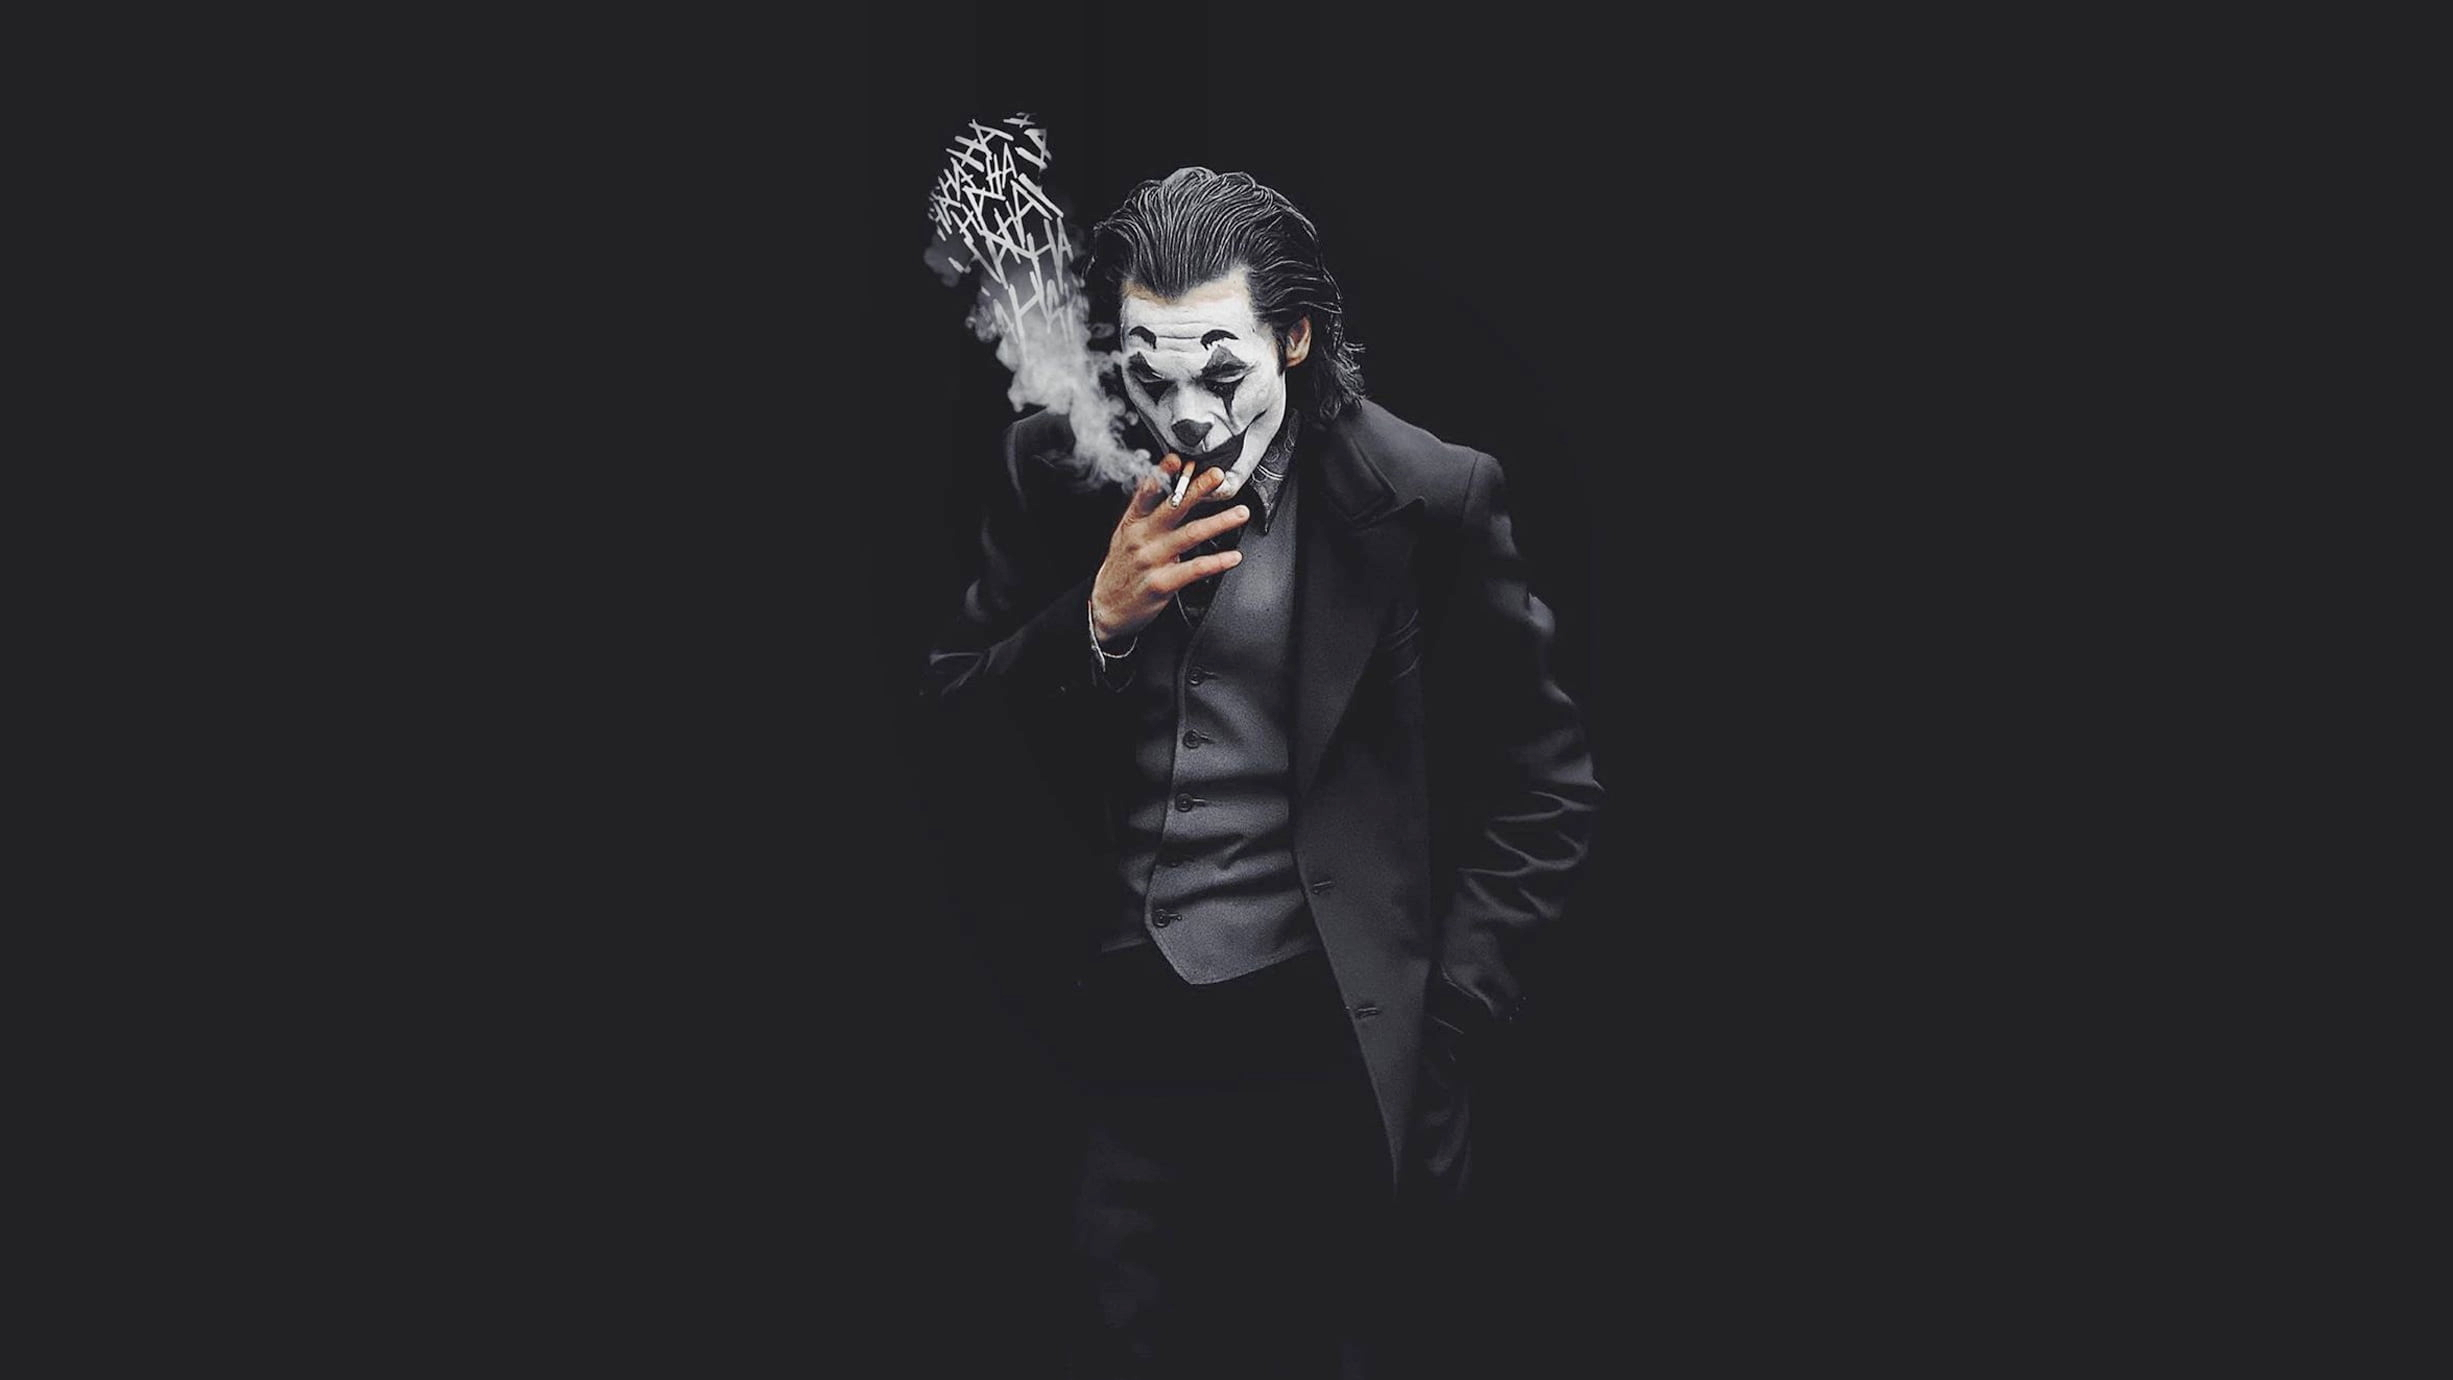 Joker black DC Comics Batman Joaquin Phoenix movie characters wallpaper